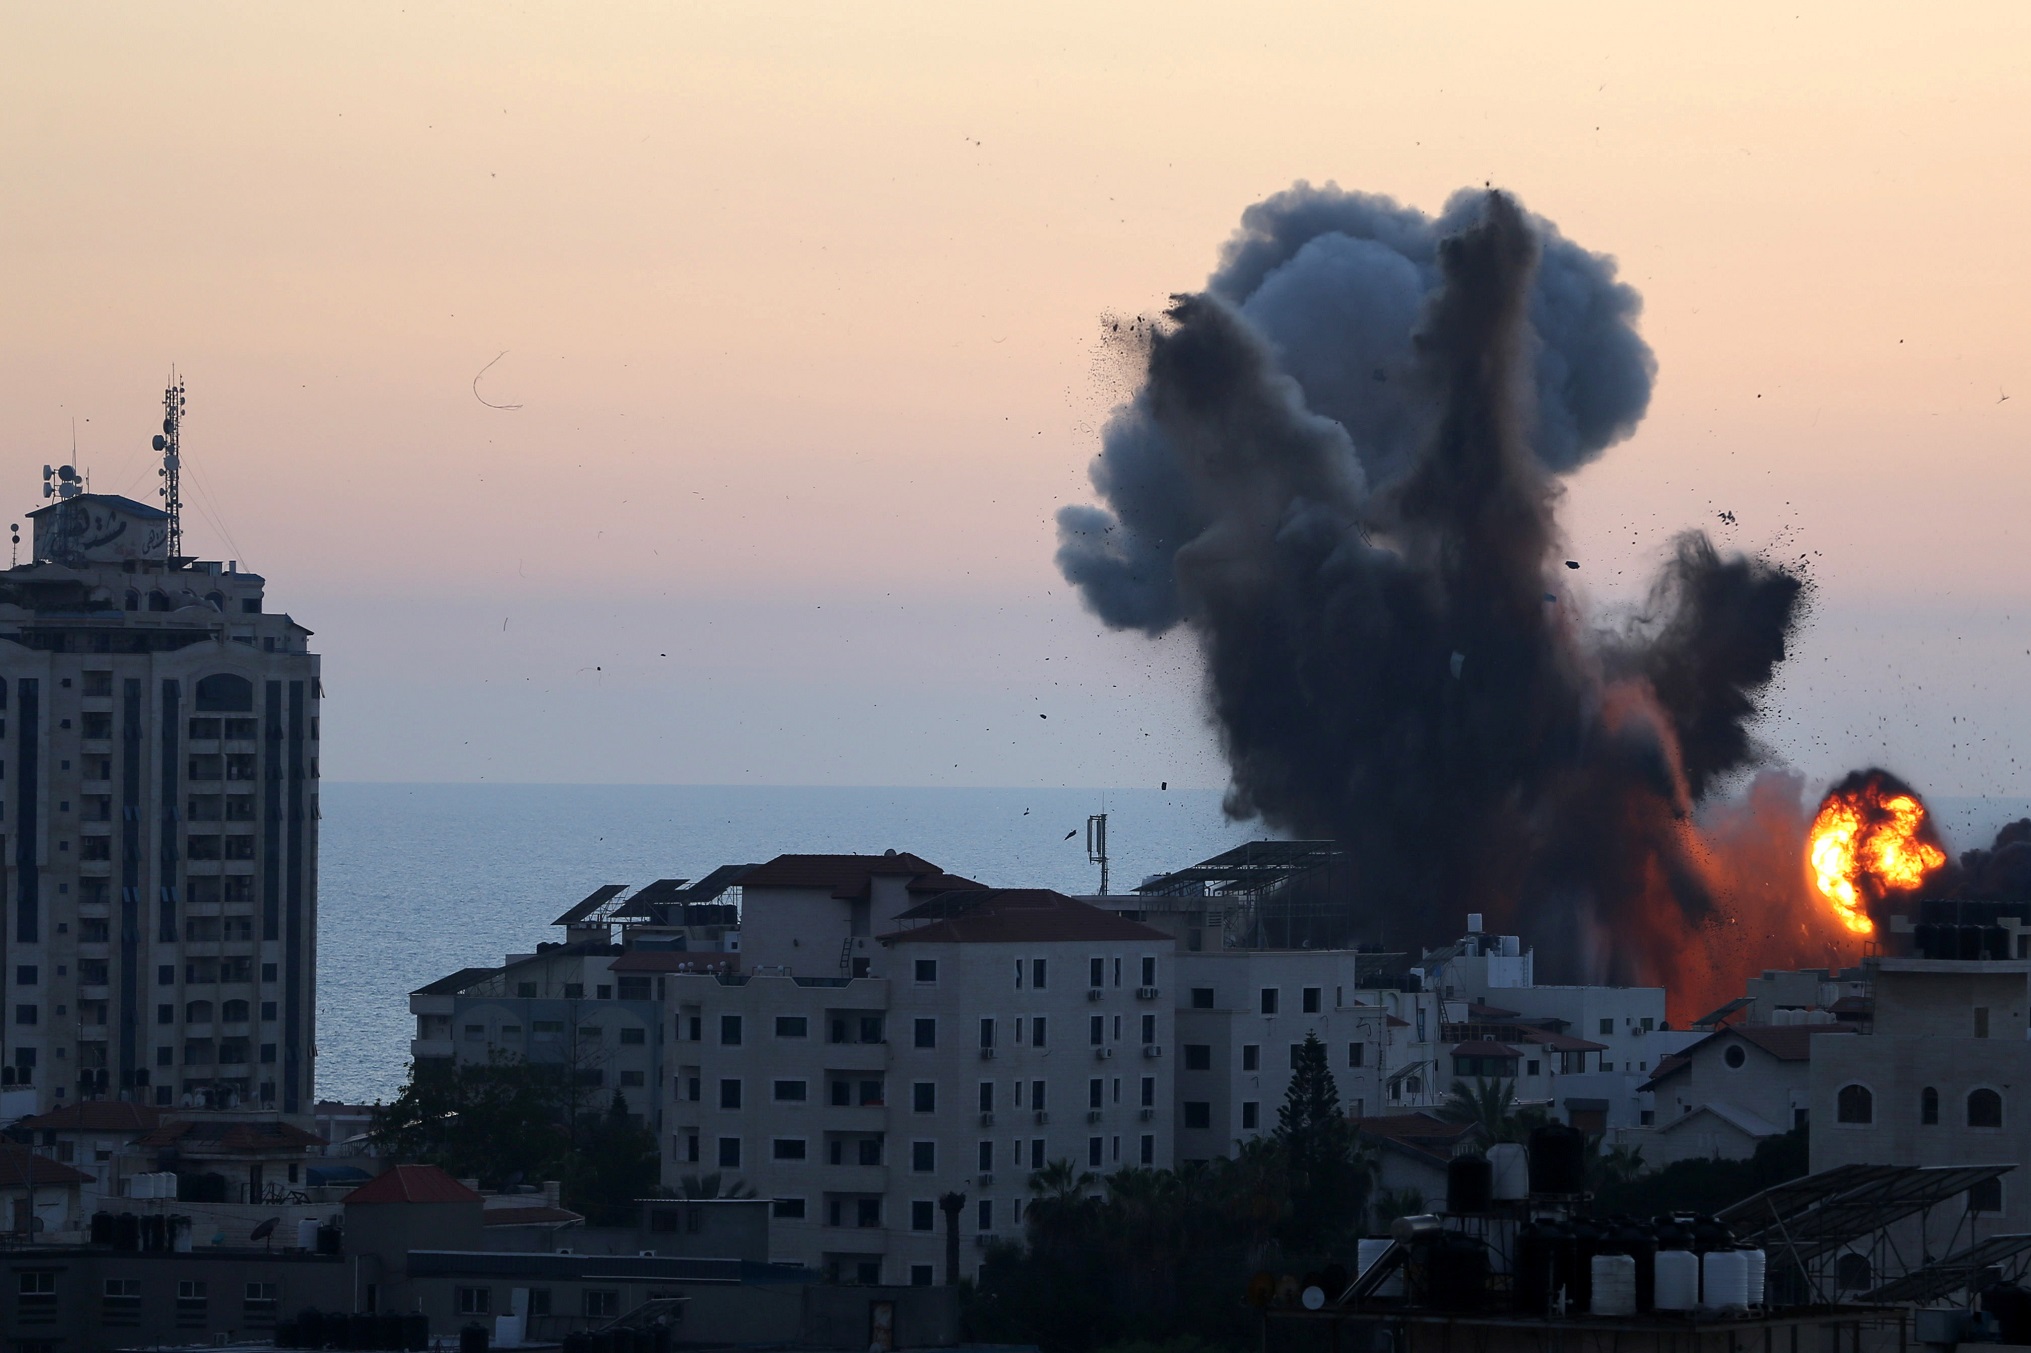 دخان ولهب يتصاعدان خلال الضربات الجوية الإسرائيلية على قطاع غزة، 14 أيار/مايو 2021. (رويترز / إبراهيم أبو مصطفى)